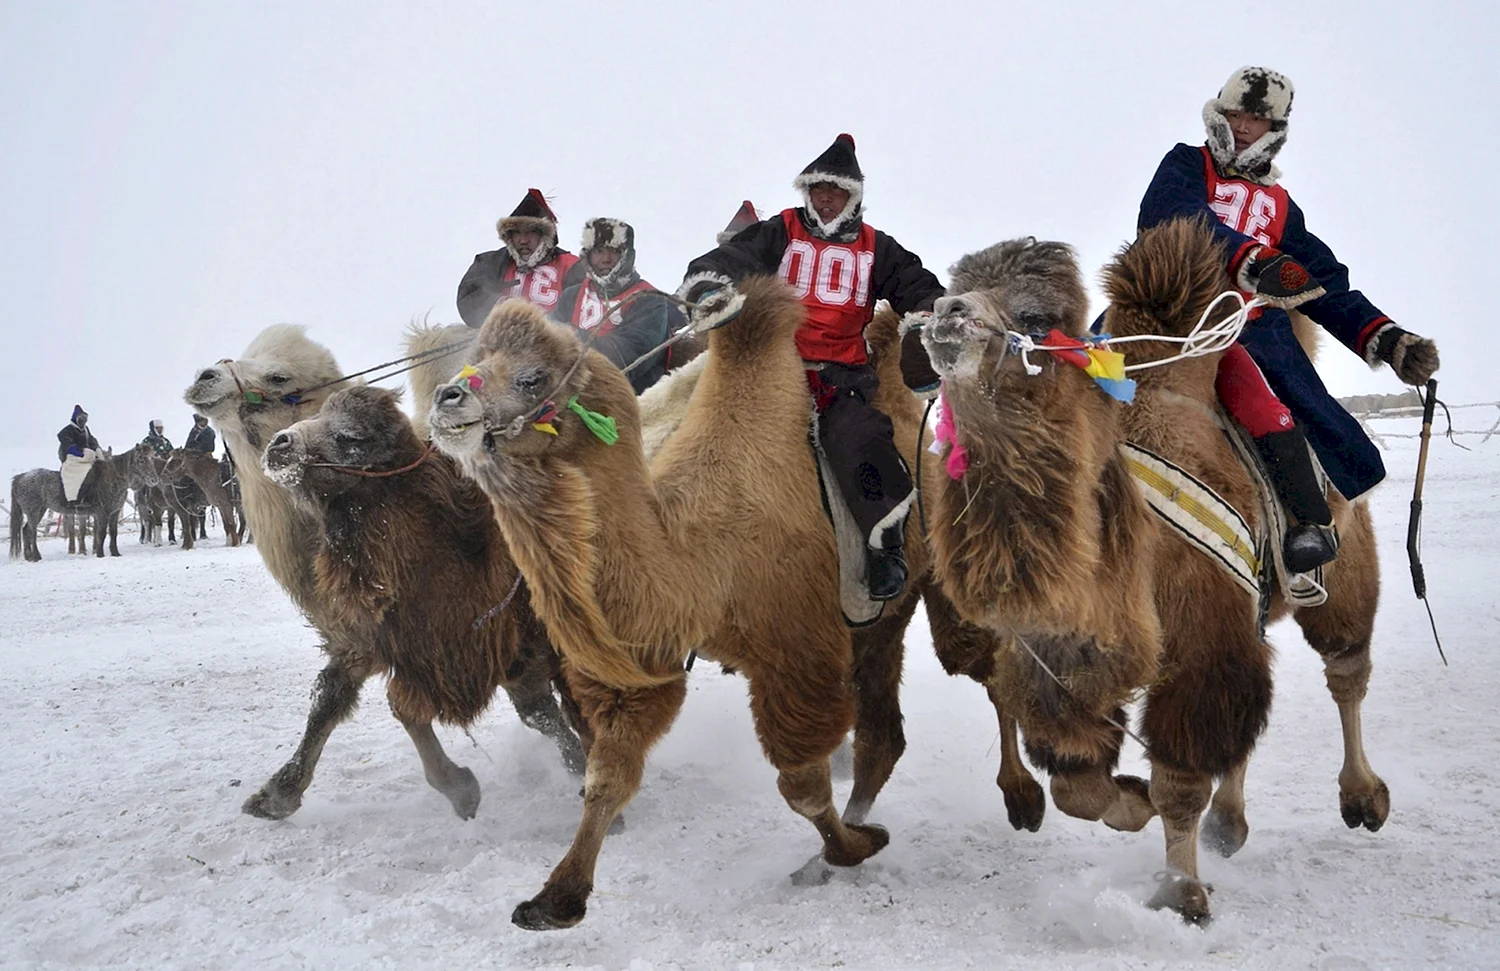 Фестиваль верблюдов в Монголии